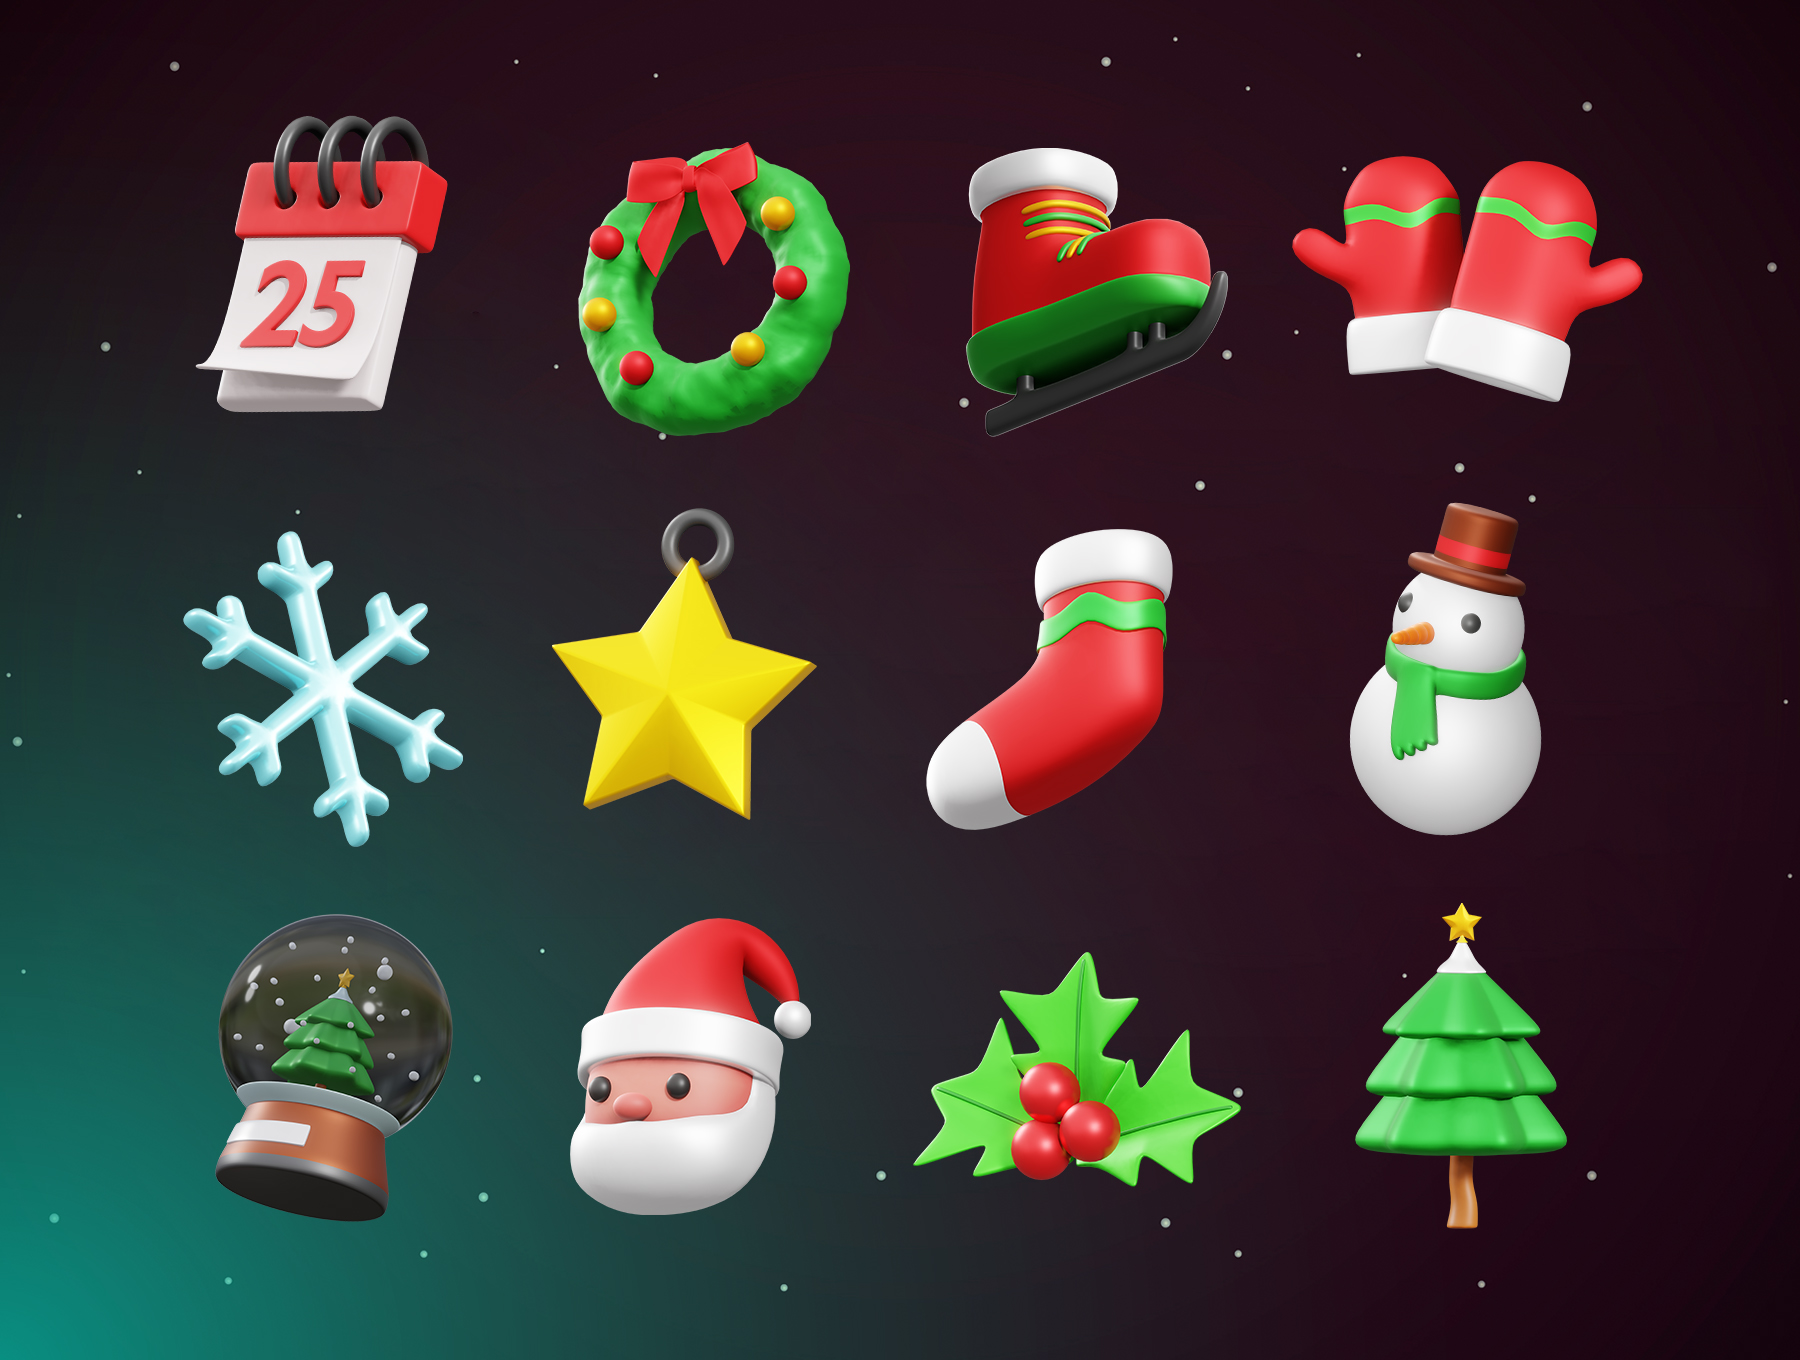 17 20个圣诞节主题3D立体图标blender模型素材 Christmas 3D Icon 17